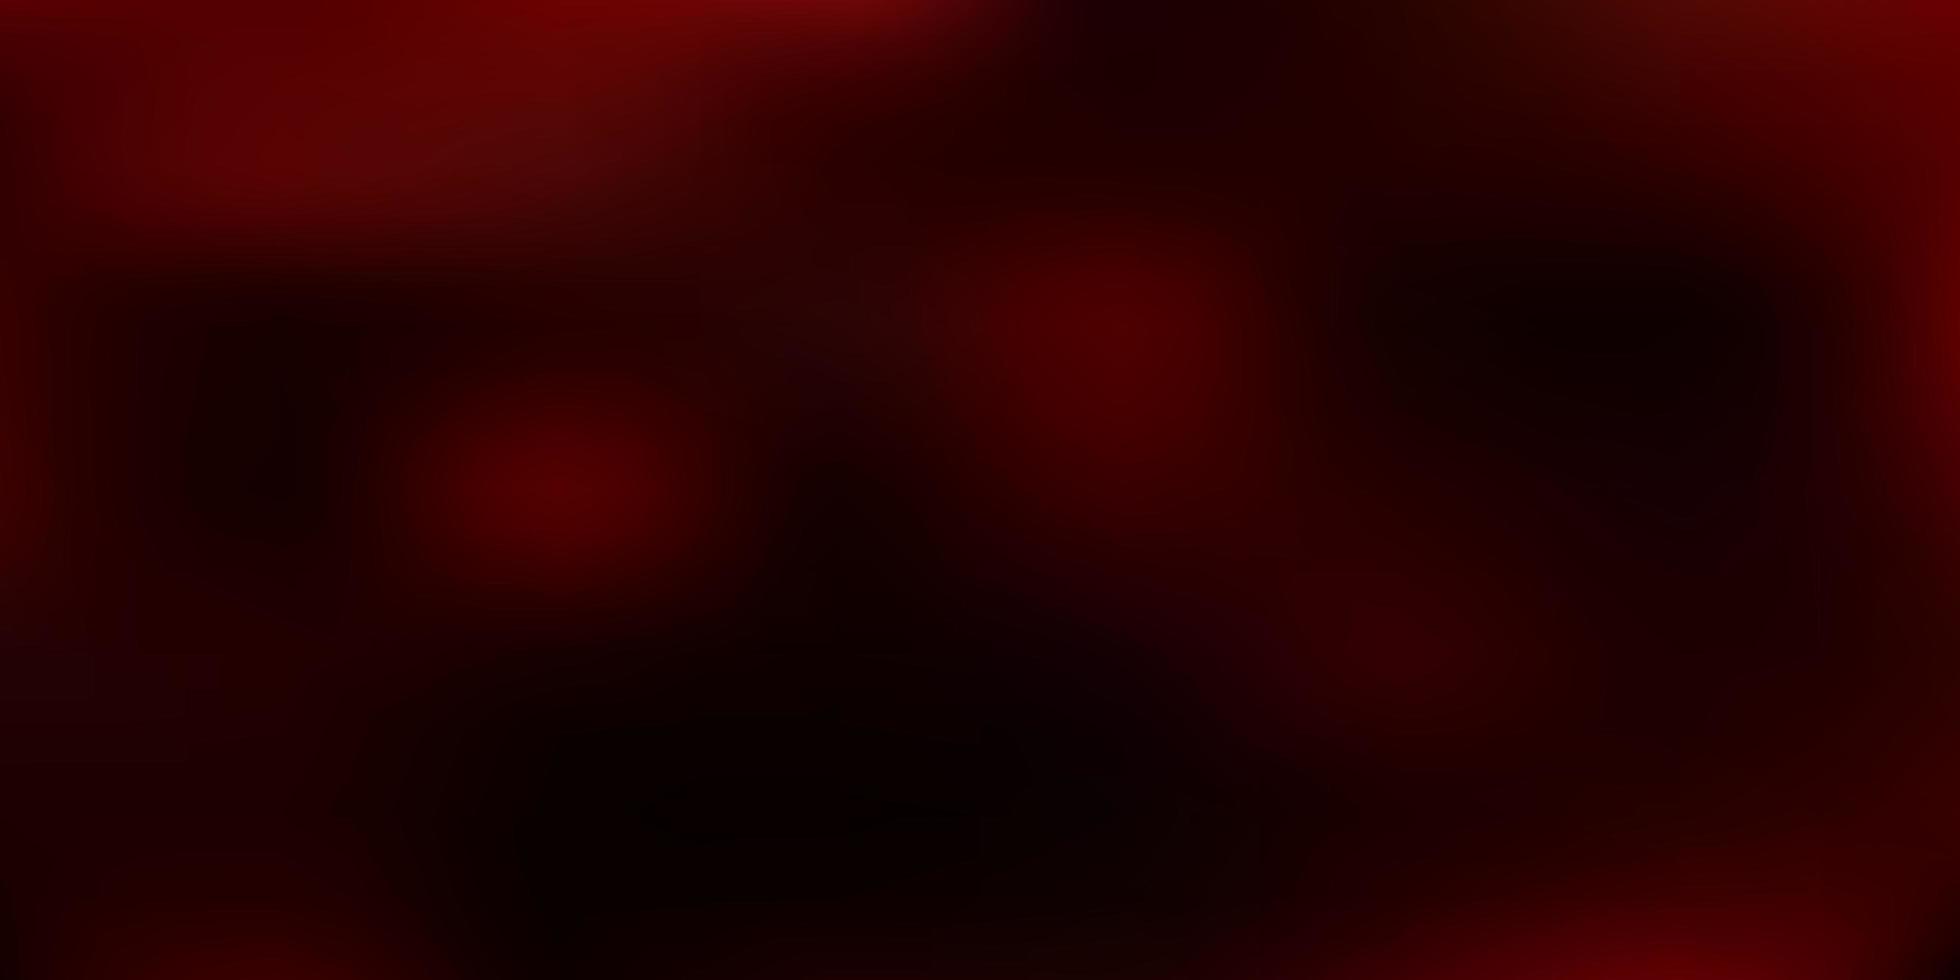 Plantilla de desenfoque abstracto de vector rojo oscuro.